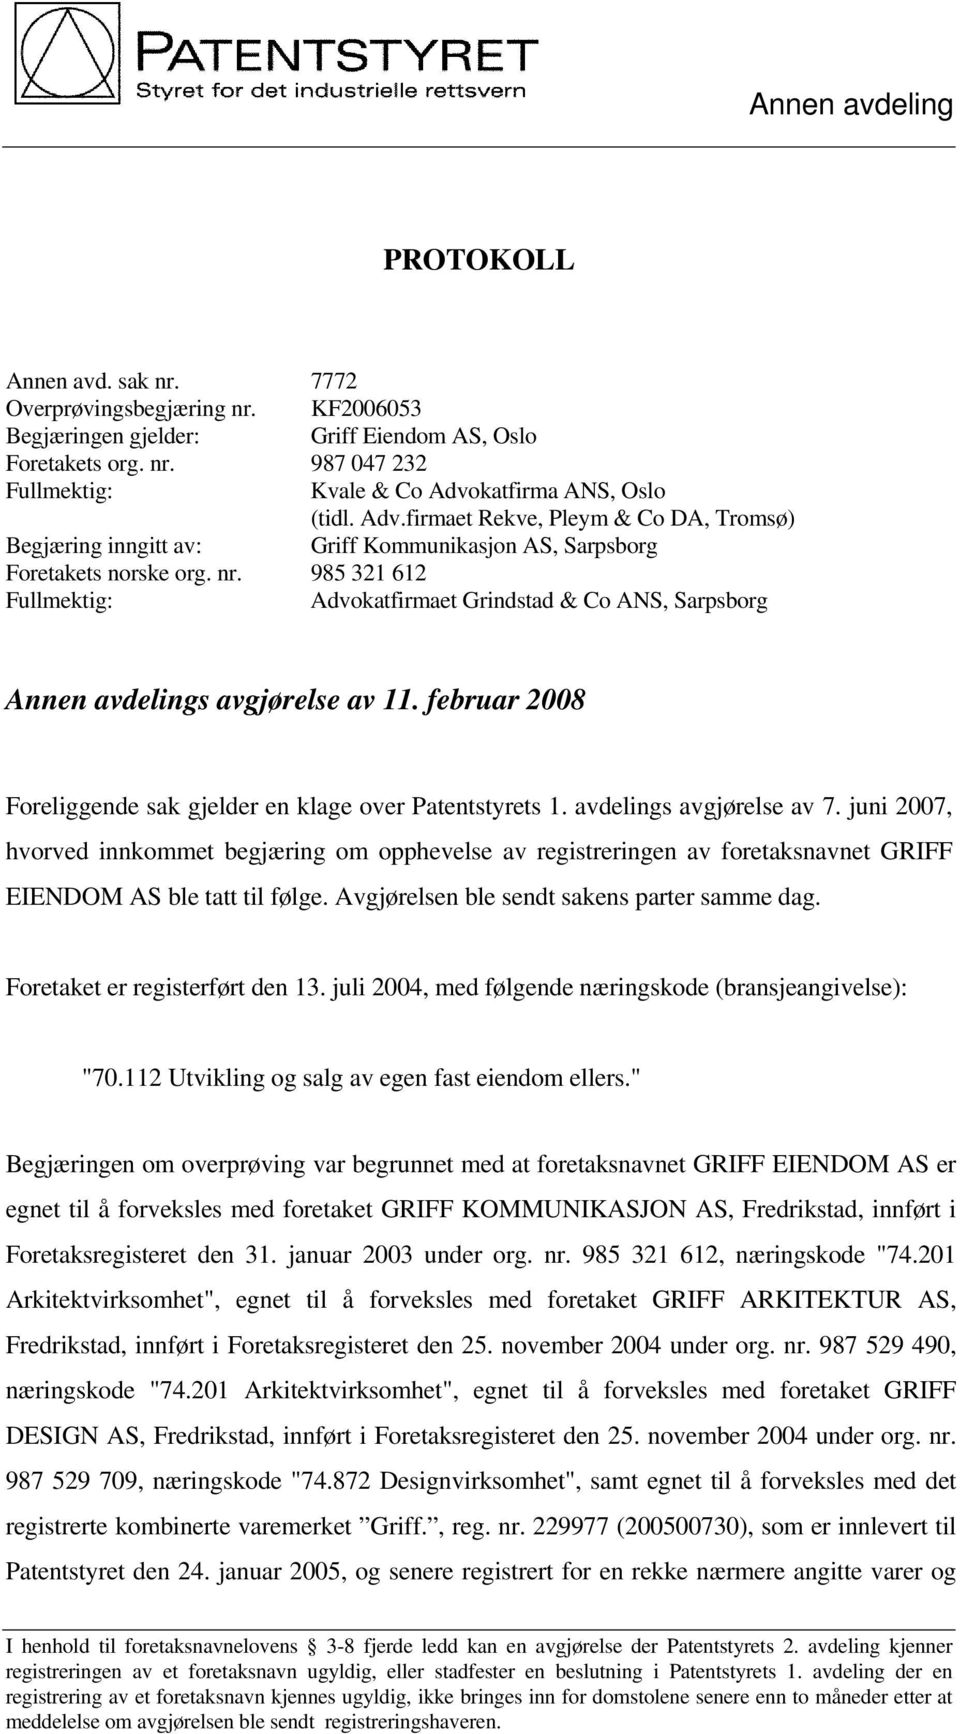 985 321 612 Fullmektig: Advokatfirmaet Grindstad & Co ANS, Sarpsborg Annen avdelings avgjørelse av 11. februar 2008 Foreliggende sak gjelder en klage over Patentstyrets 1. avdelings avgjørelse av 7.